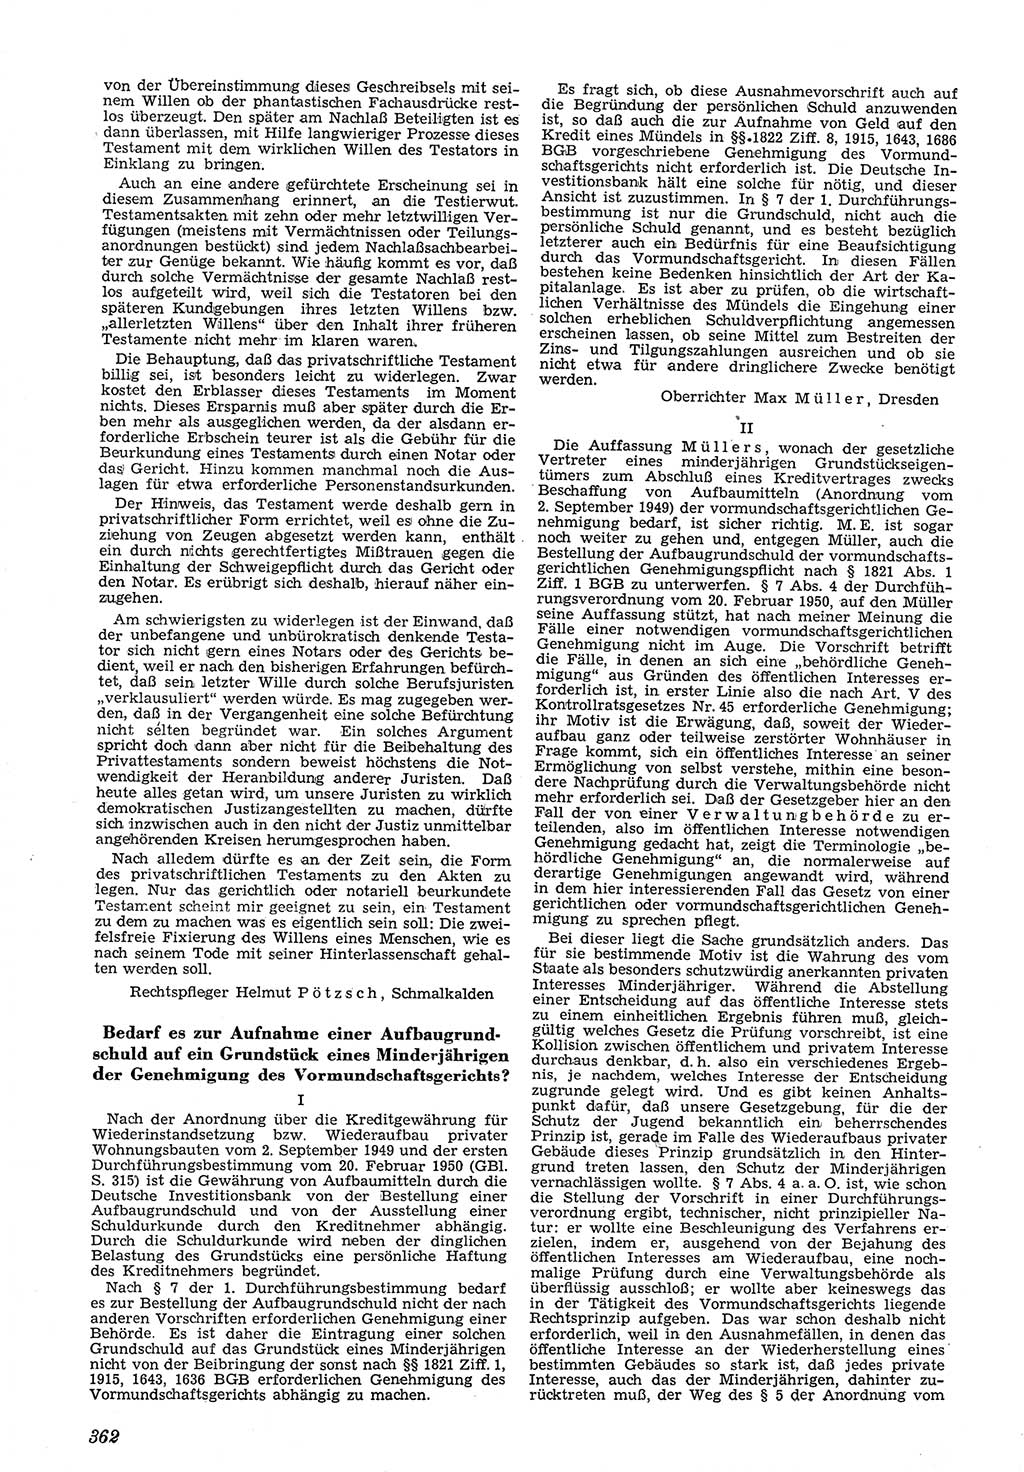 Neue Justiz (NJ), Zeitschrift für Recht und Rechtswissenschaft [Deutsche Demokratische Republik (DDR)], 5. Jahrgang 1951, Seite 362 (NJ DDR 1951, S. 362)